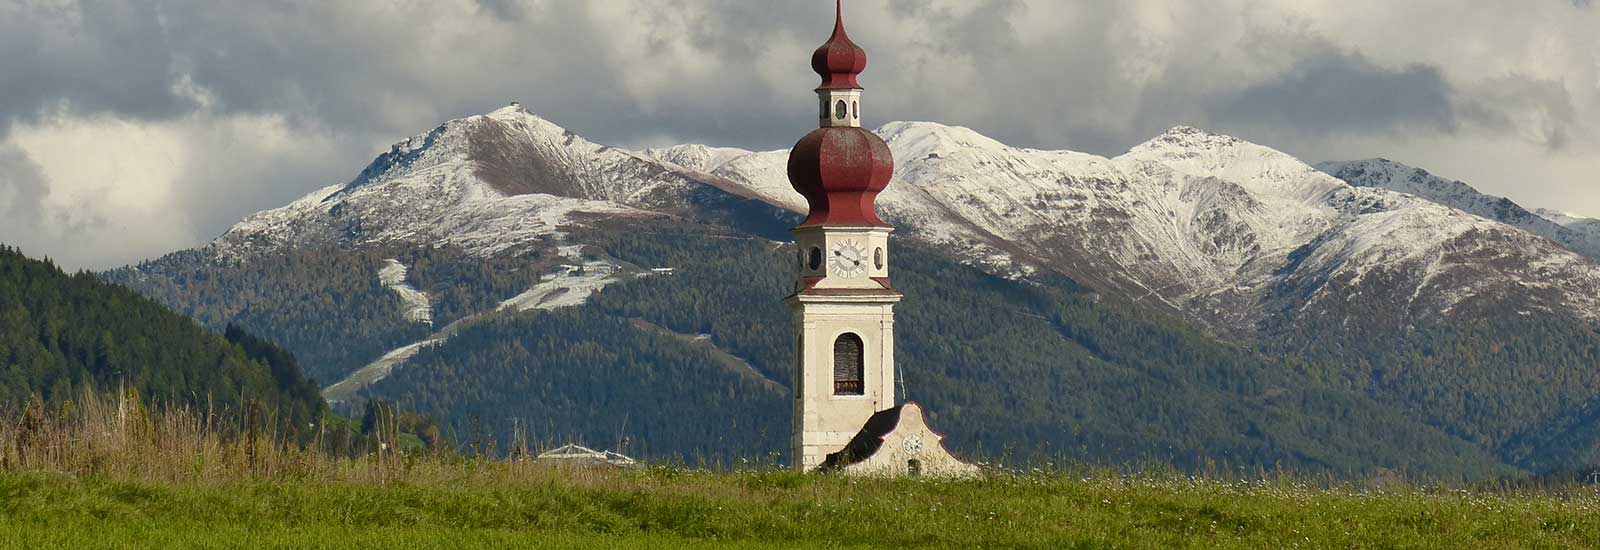 Villabassa in Alto Adige